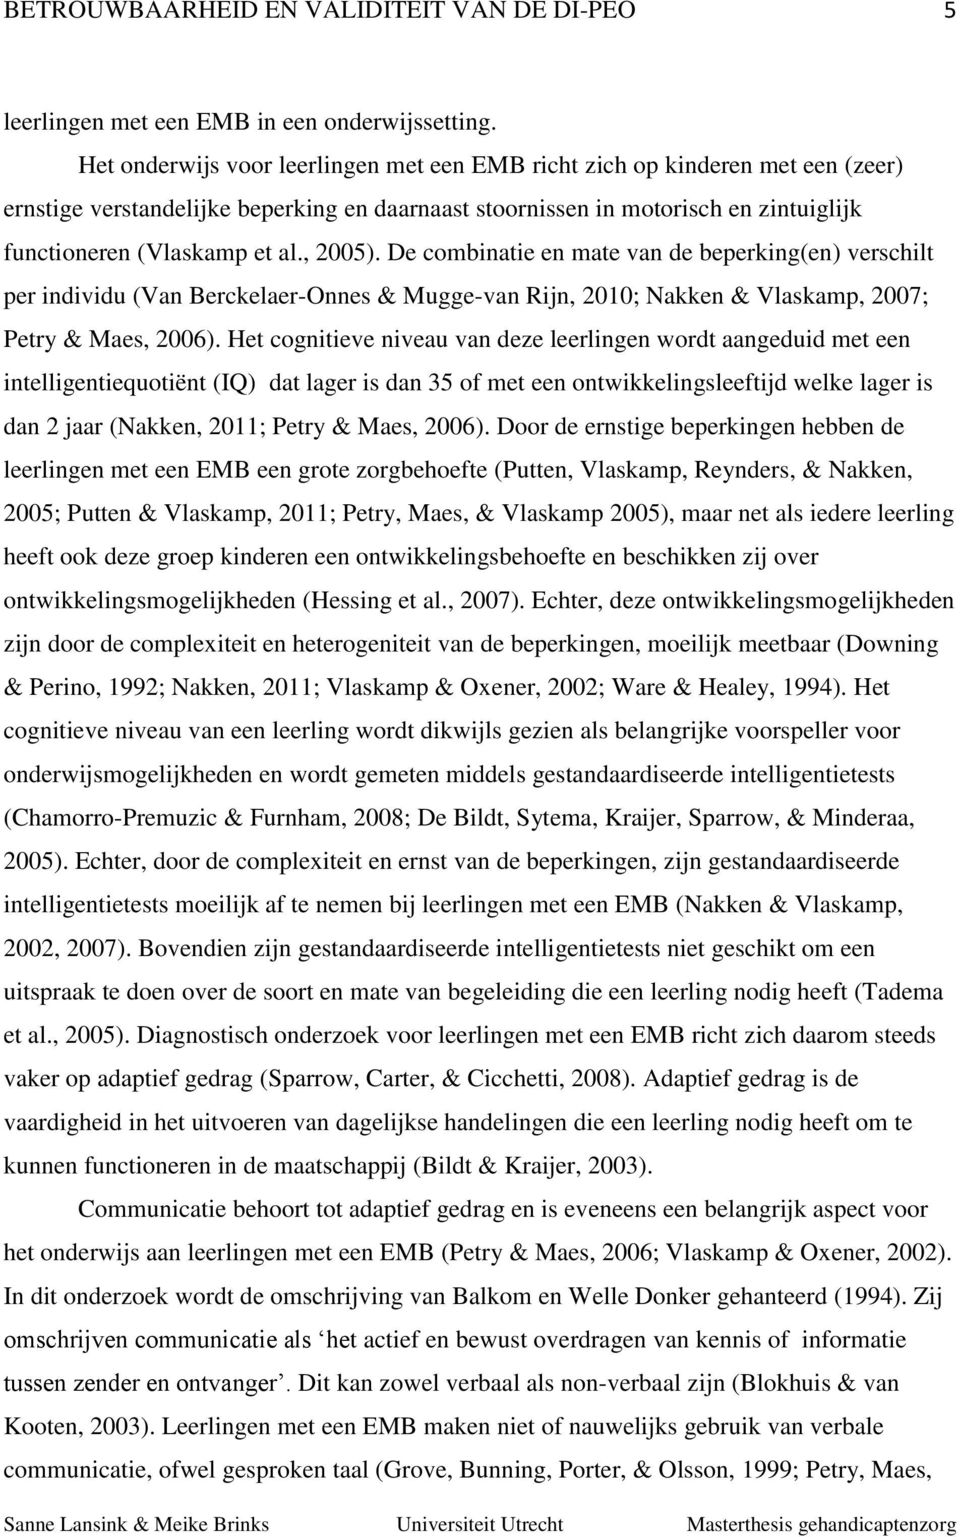 , 2005). De combinatie en mate van de beperking(en) verschilt per individu (Van Berckelaer-Onnes & Mugge-van Rijn, 2010; Nakken & Vlaskamp, 2007; Petry & Maes, 2006).